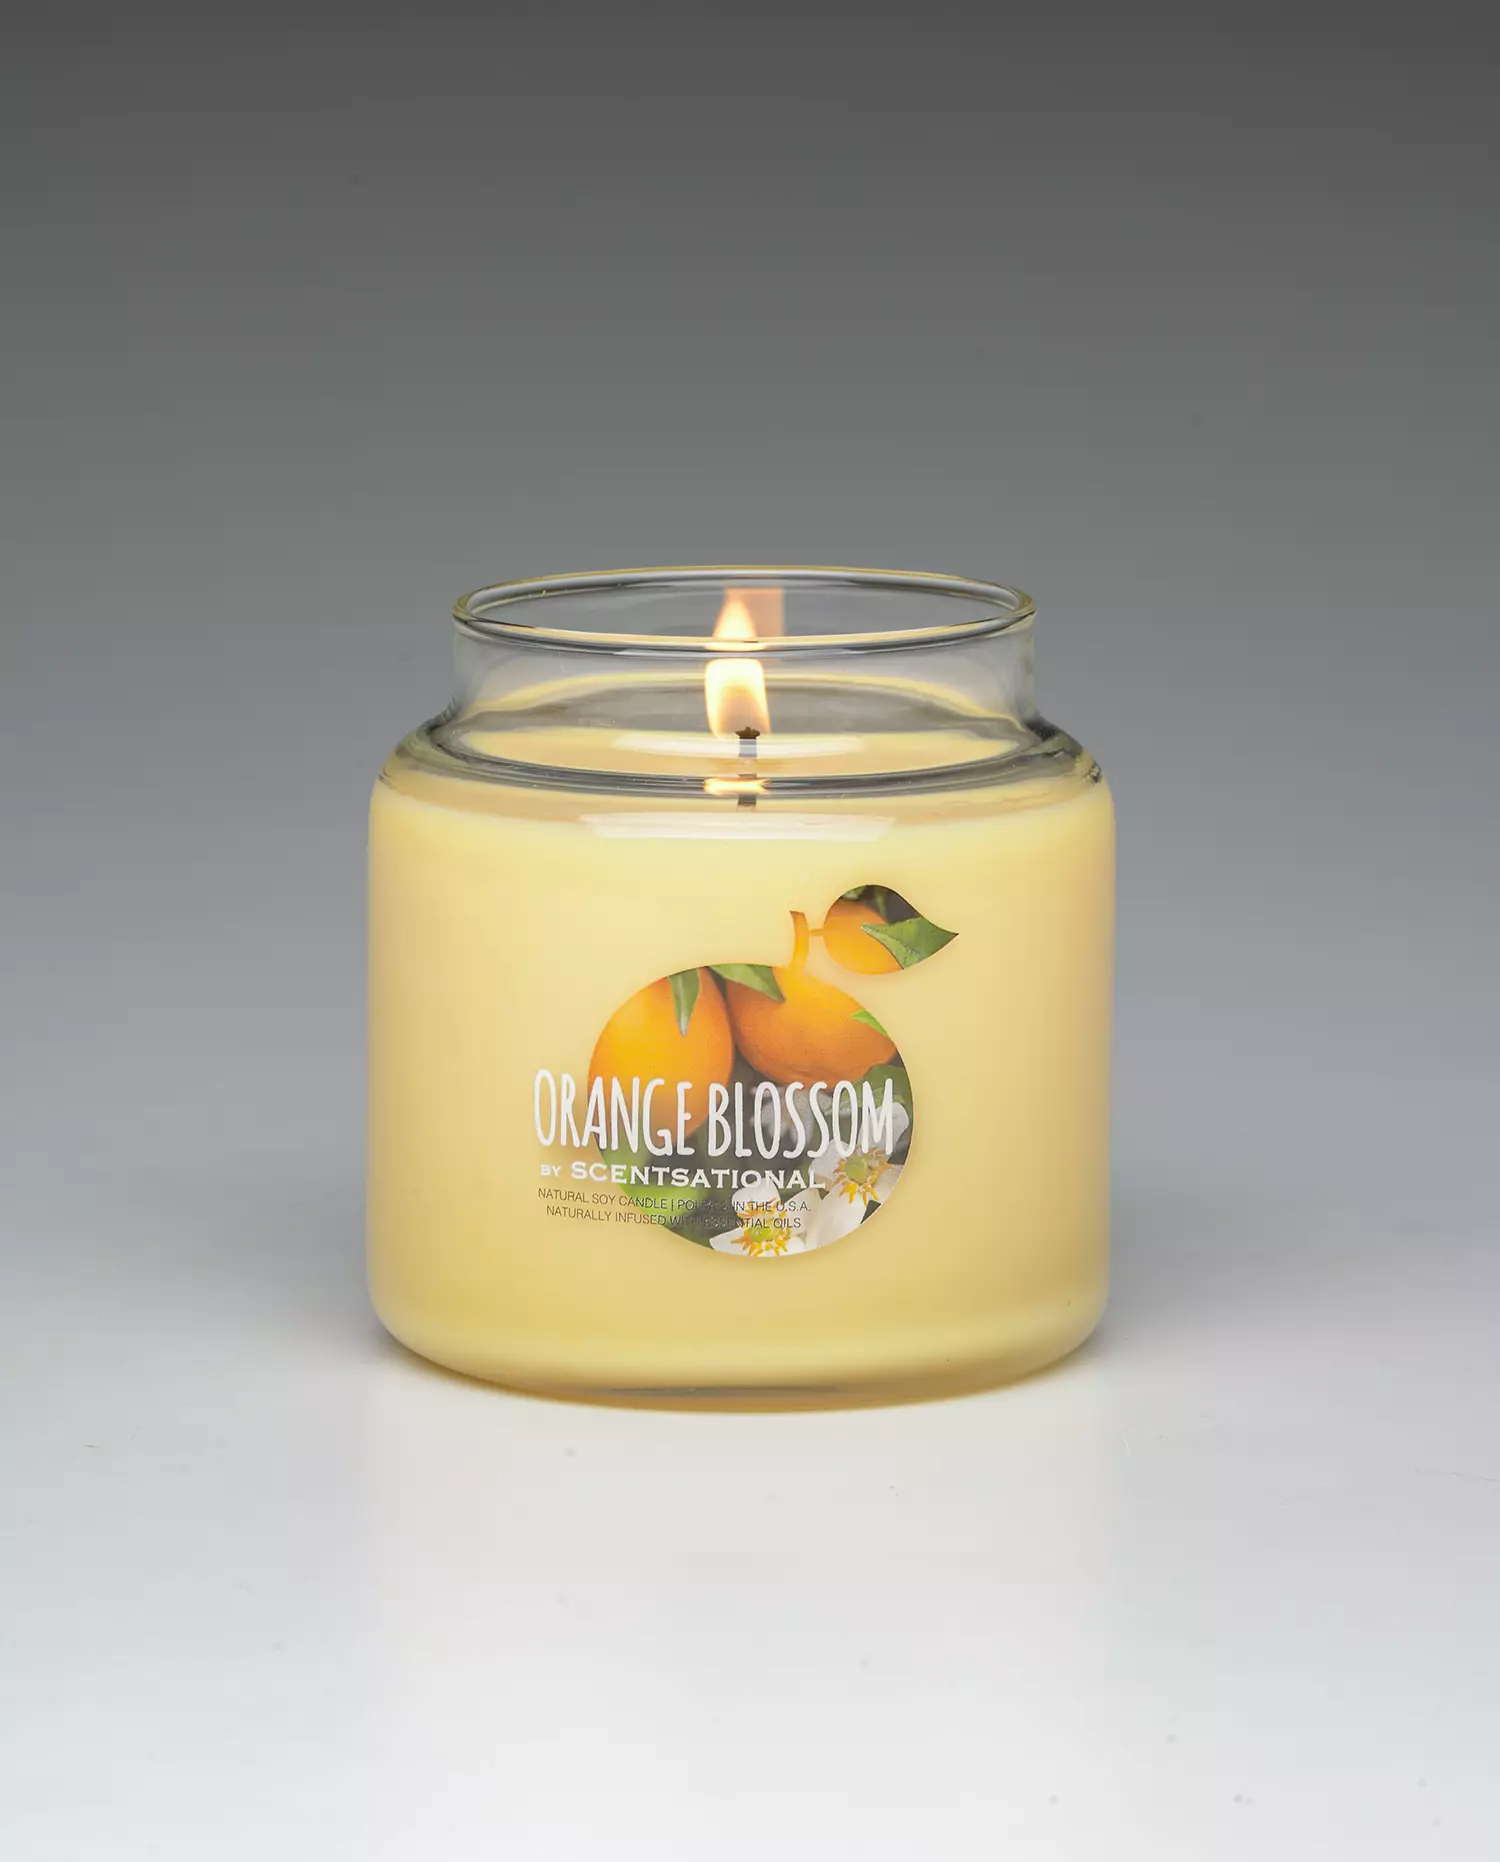 Orange Blossom 19oz scented candle burning